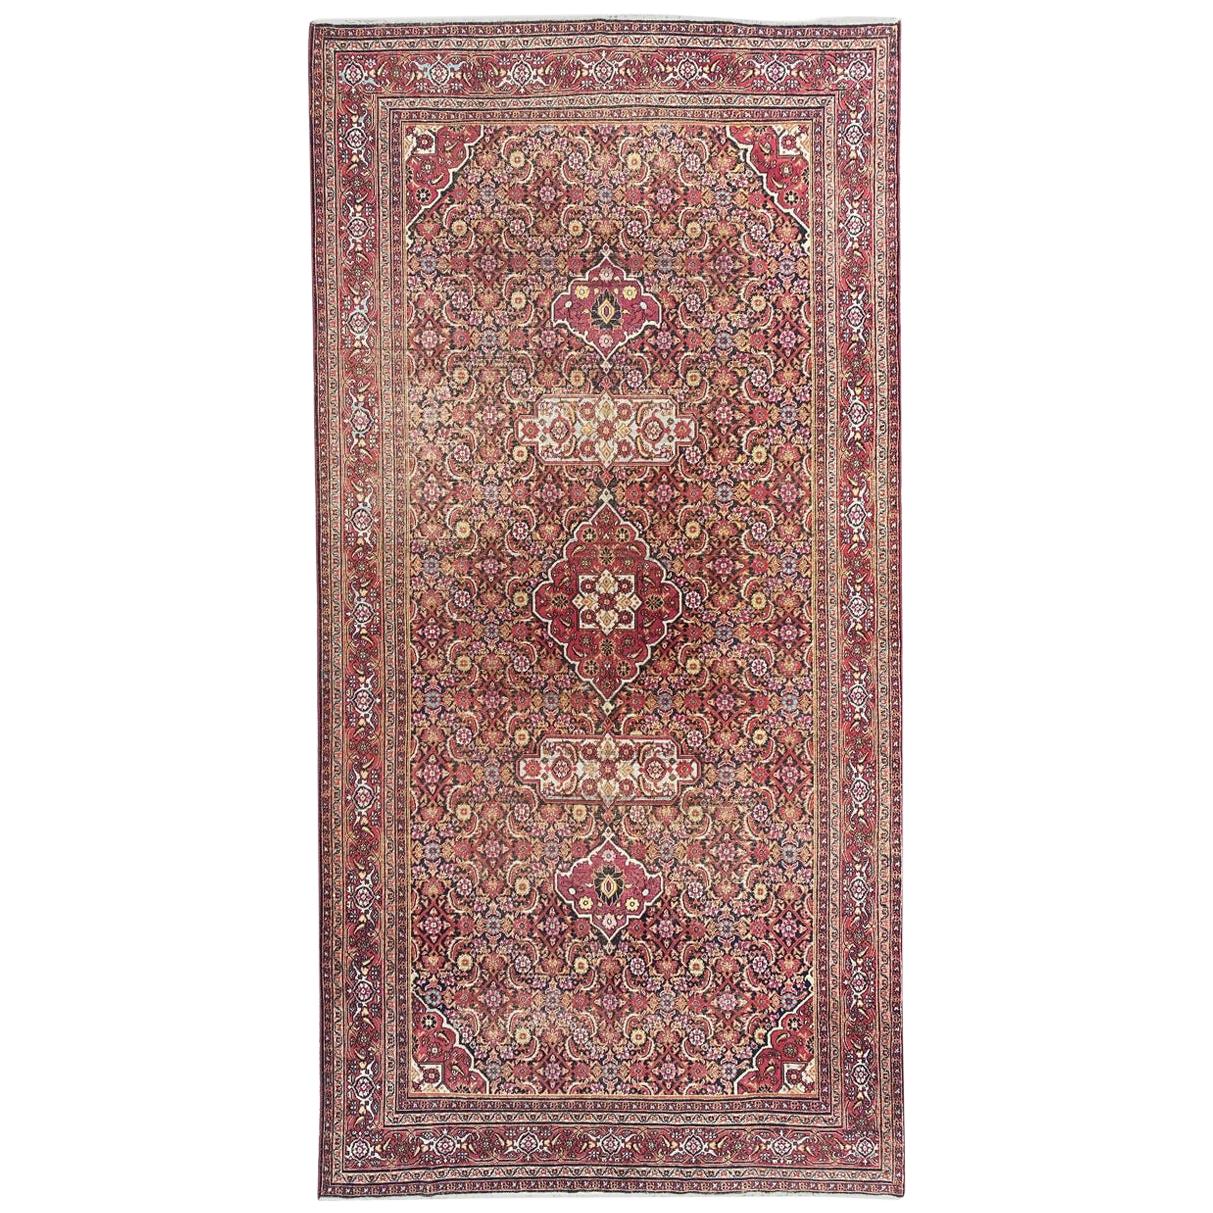 Bobyrugs wundervoller antiker Khorassan-Teppich aus dem frühen 19.